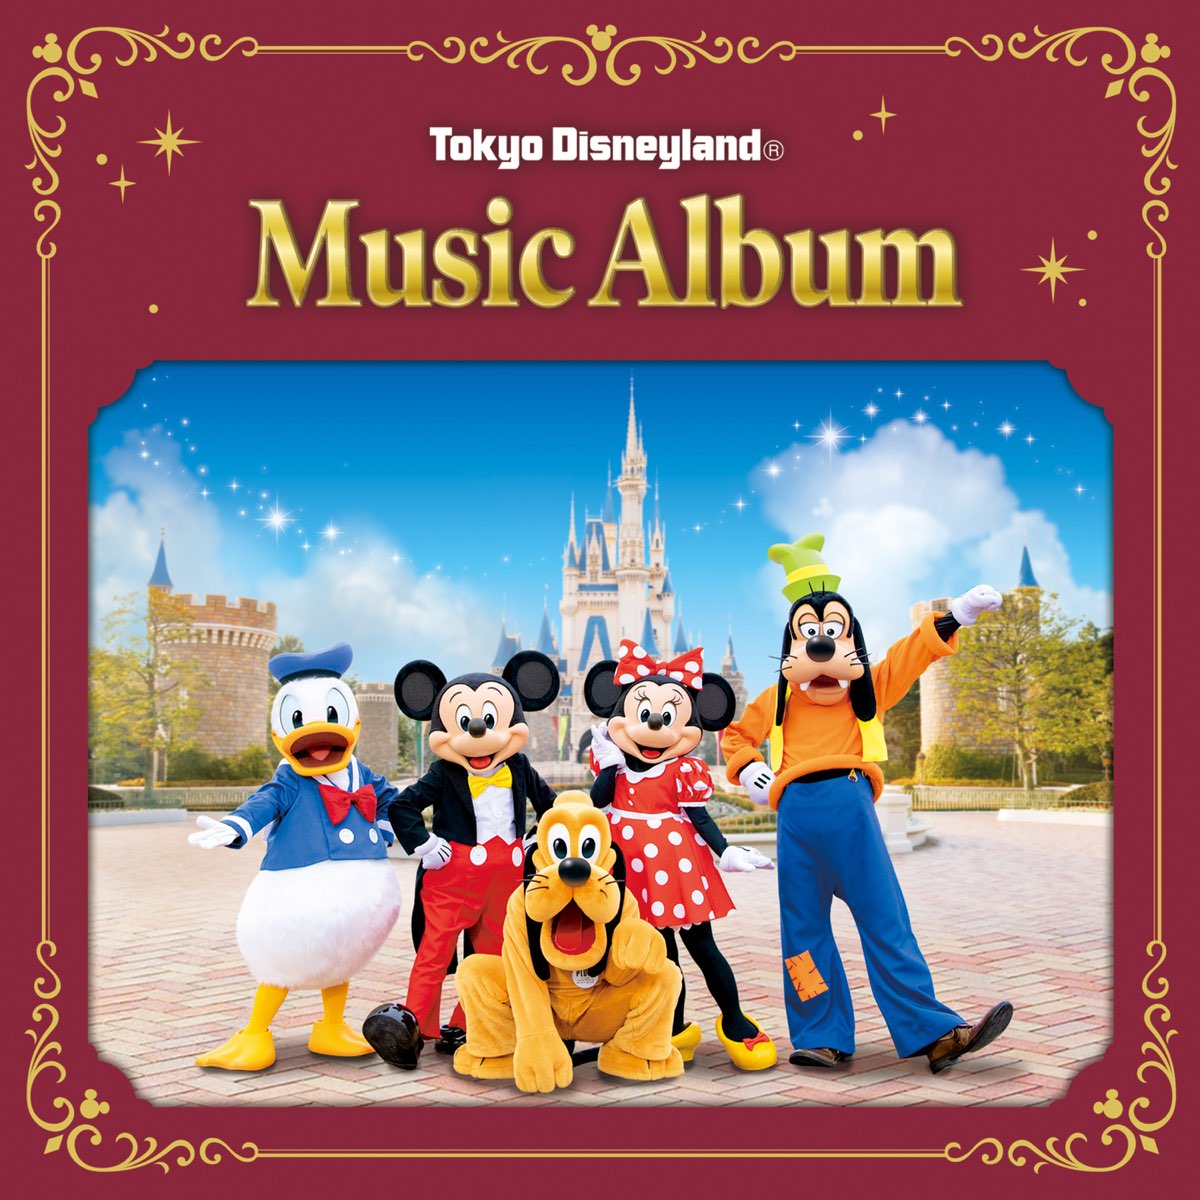 東京ディズニーランドの Tokyo Disneyland Music Album をapple Musicで